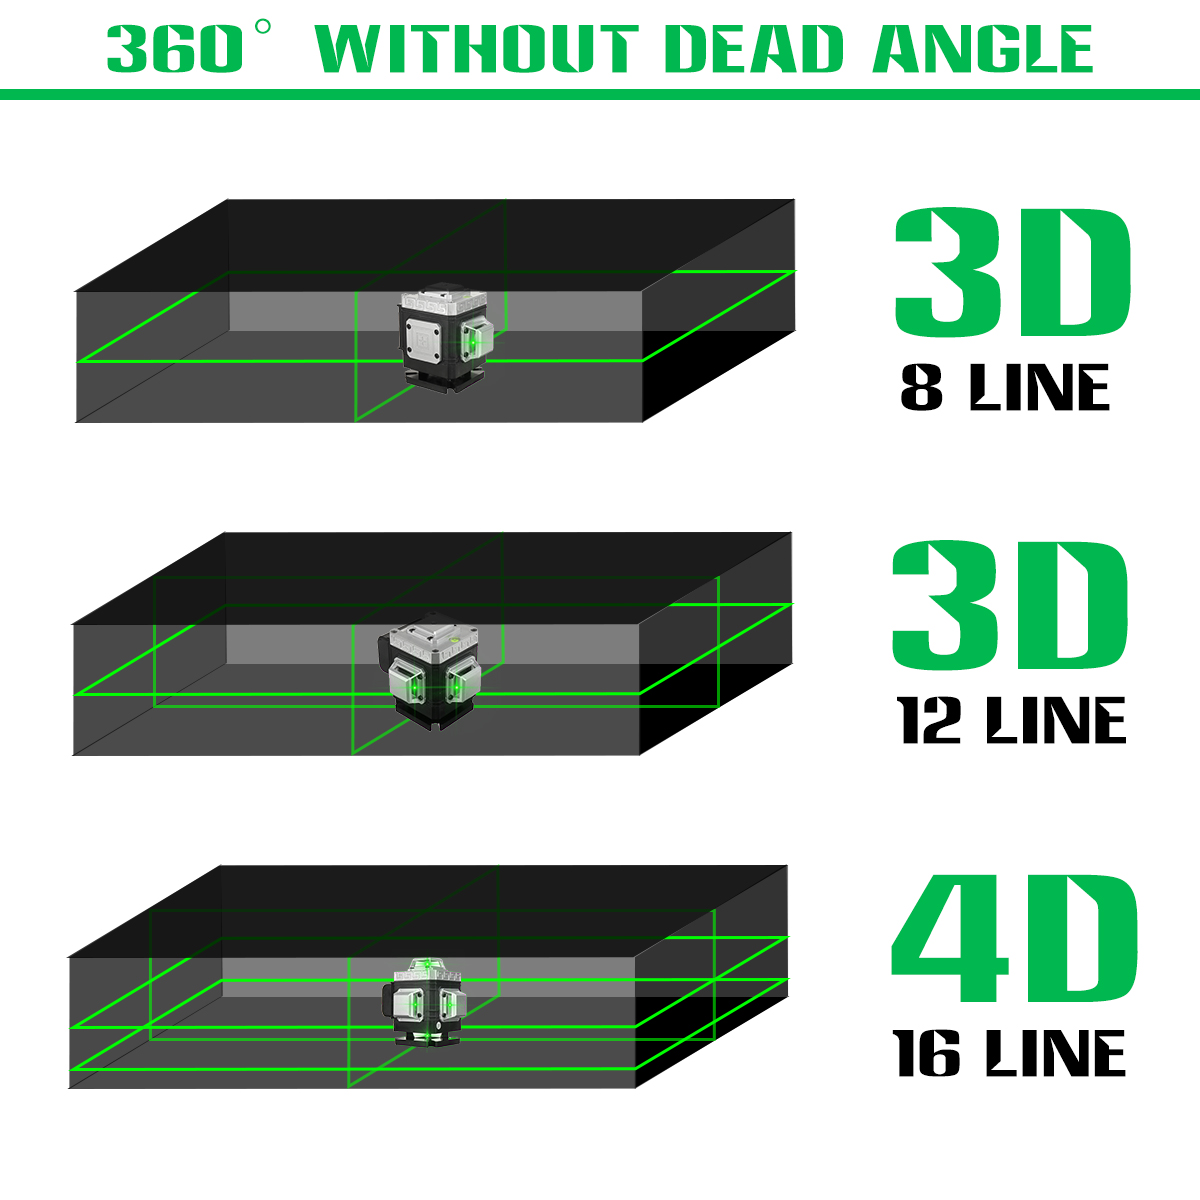 81216-Line-360deg-4D-Line-Laser-Level-Green-Light-Self-Leveling-Cross-Measure-Tool-Kit-1864007-3